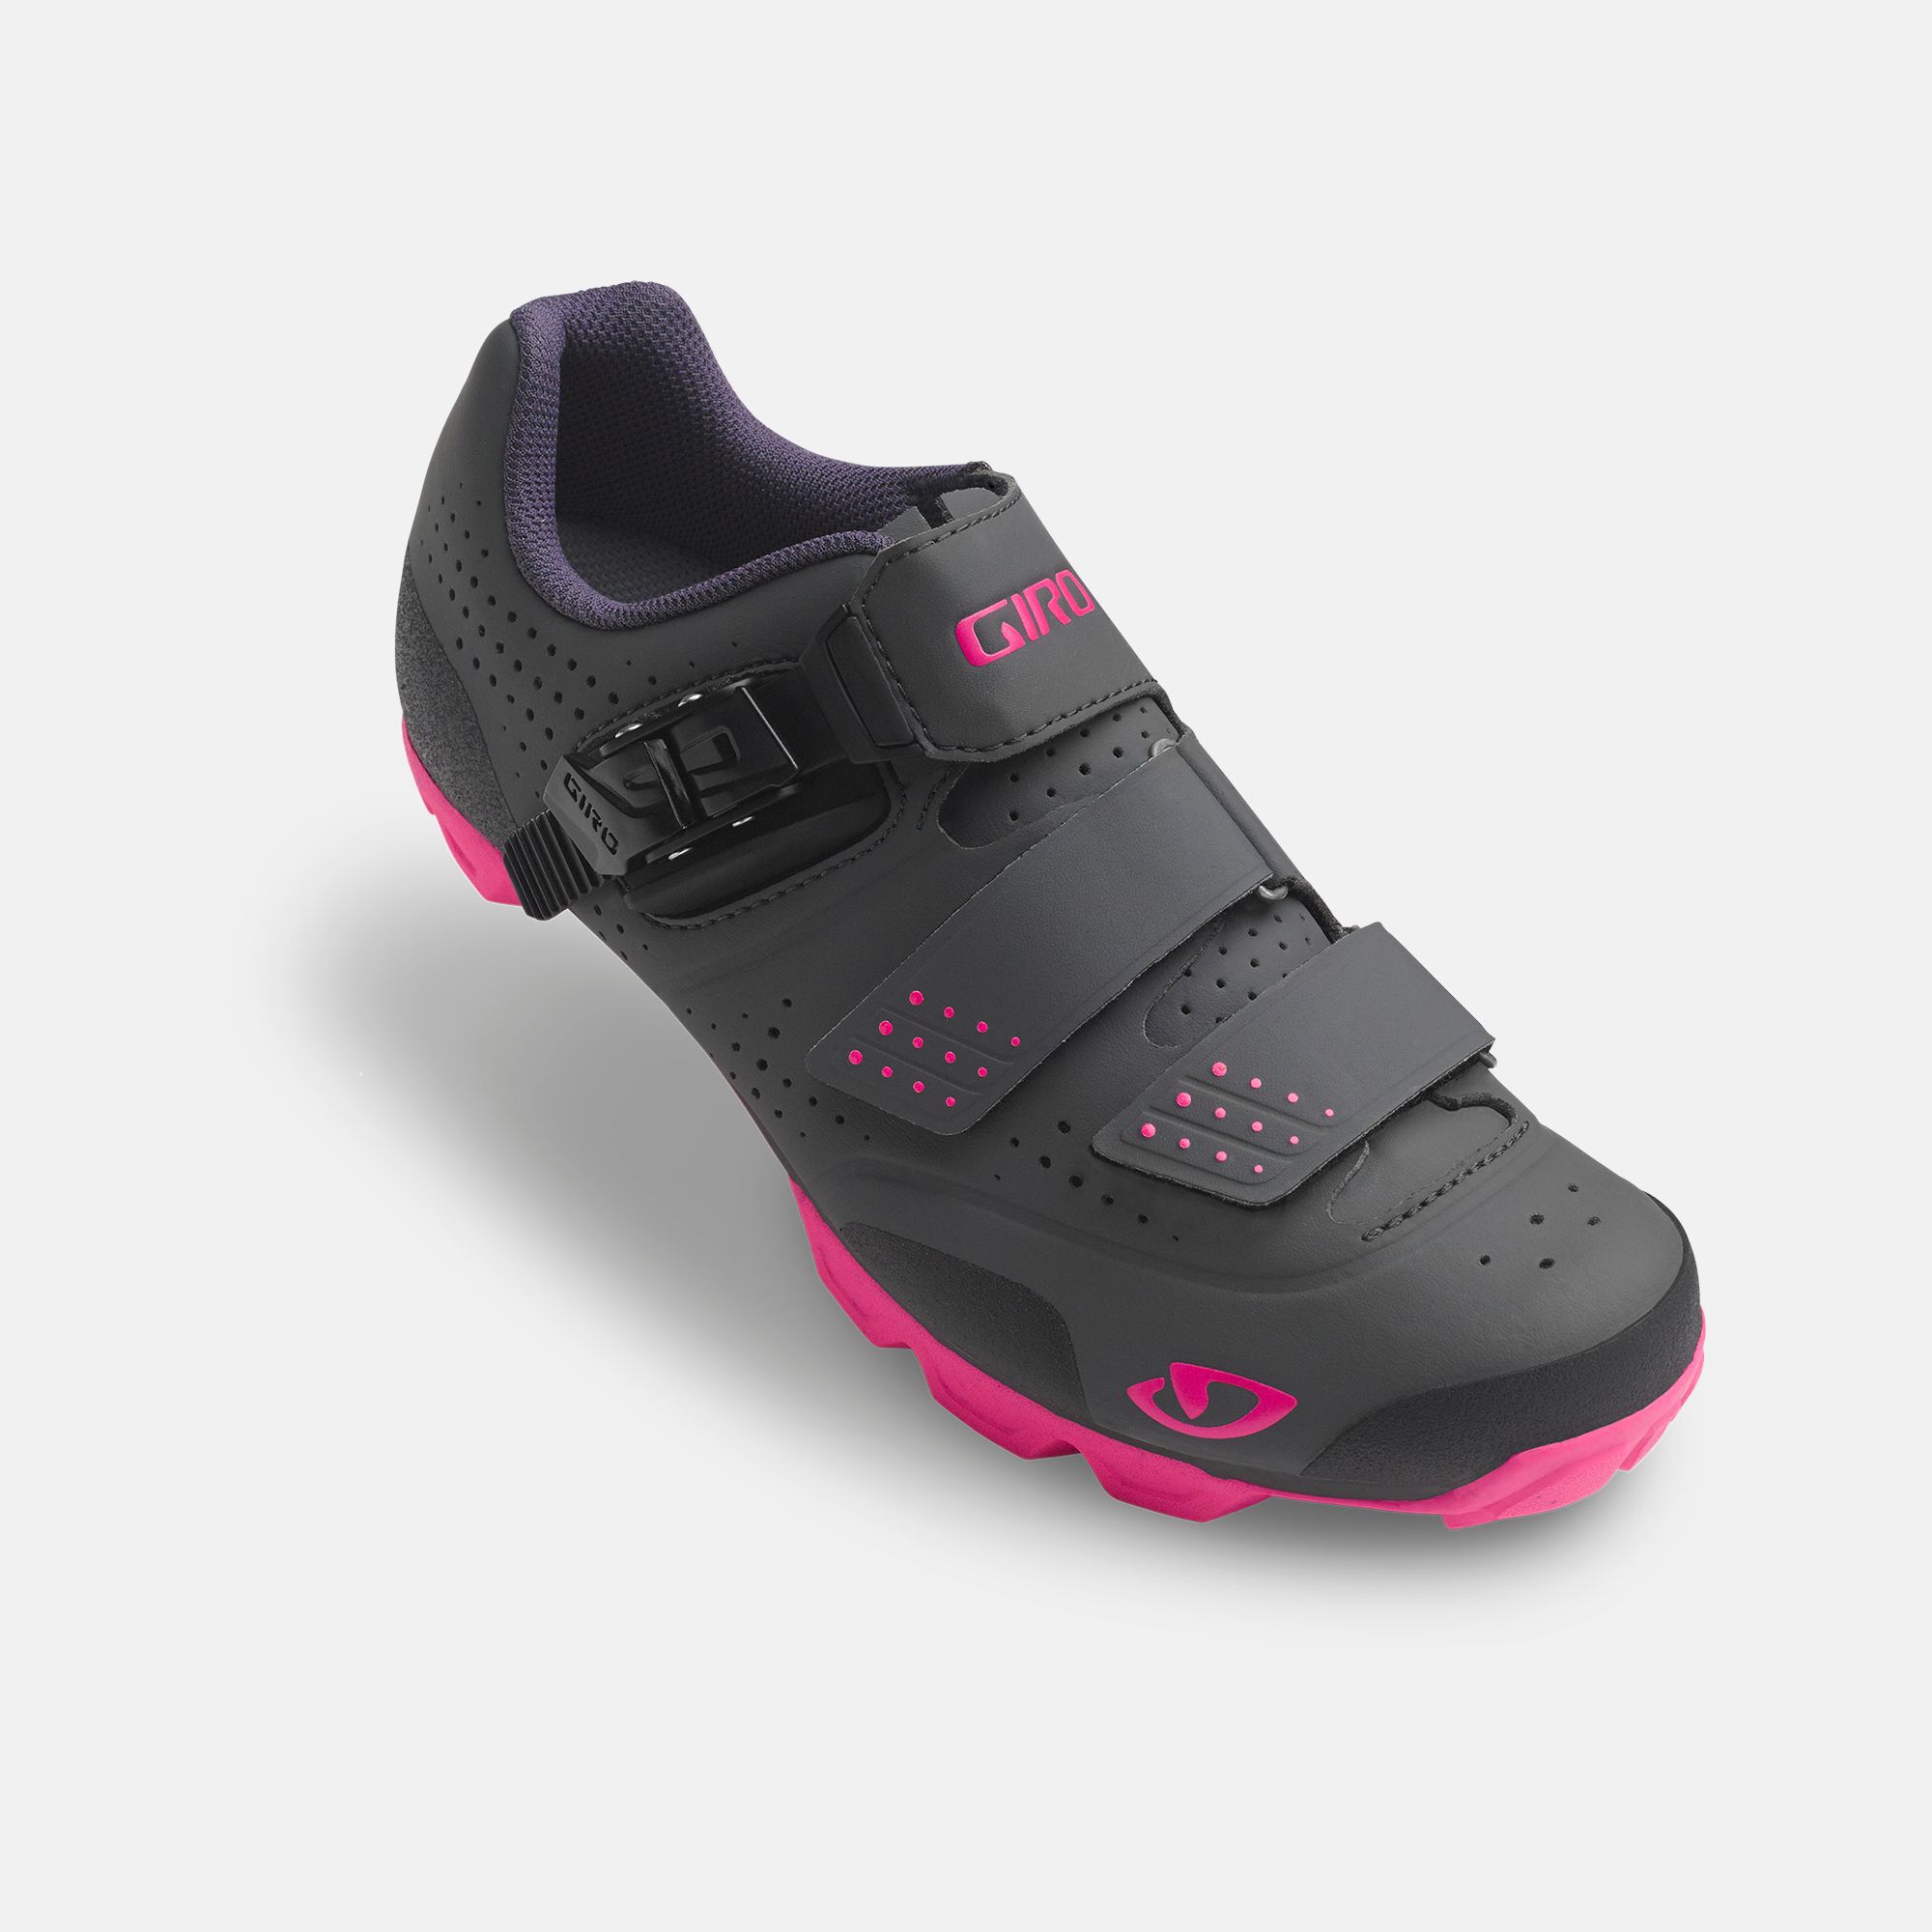 Manta R Shoe | Giro